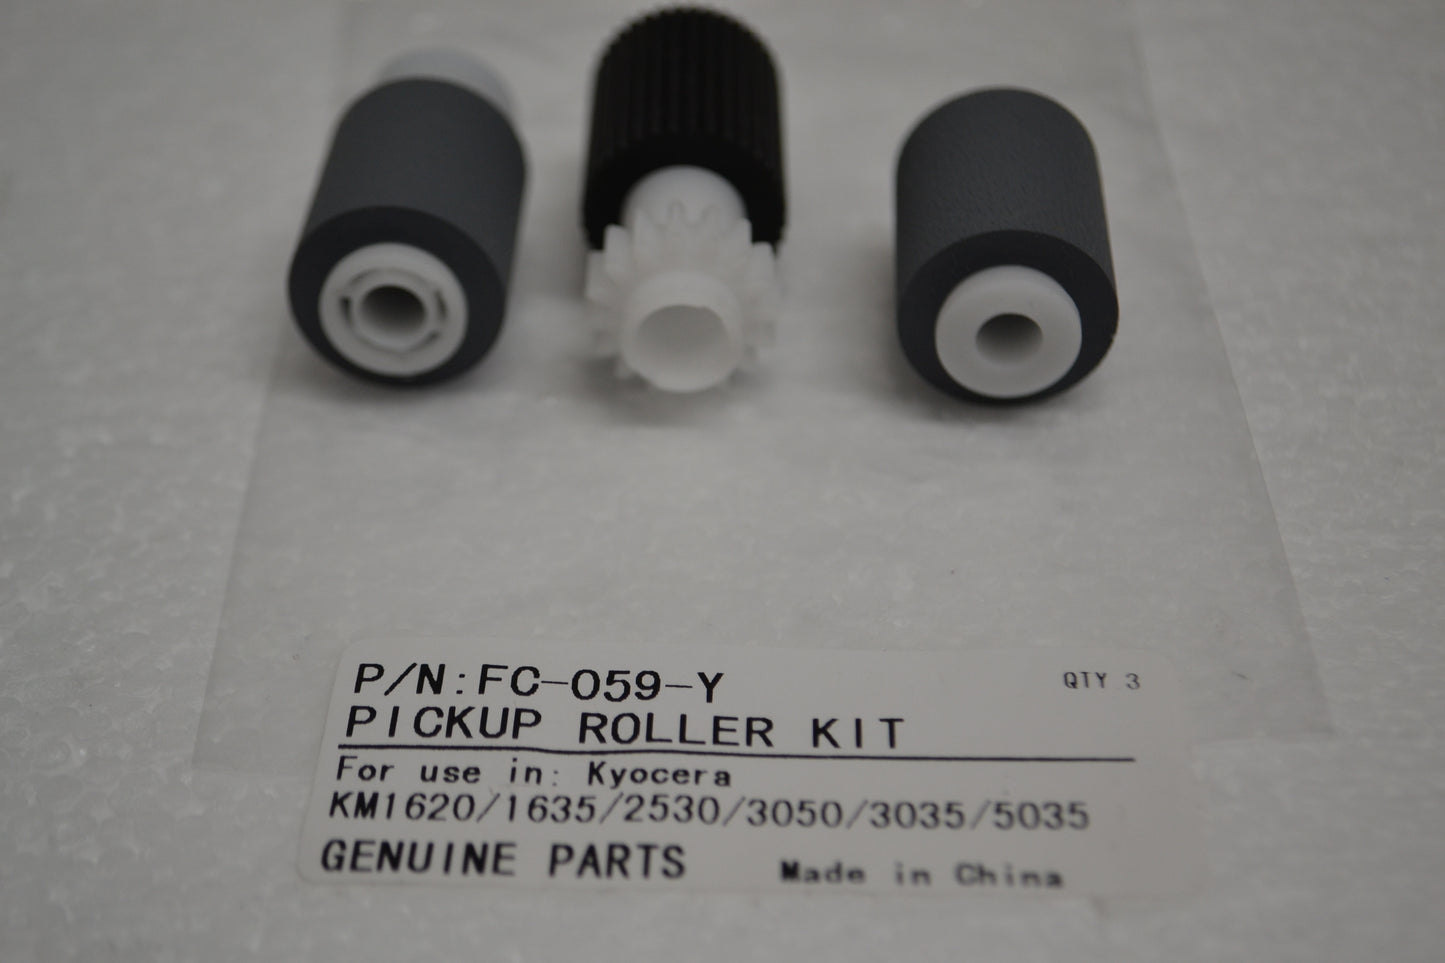 Kyocera Pickup Roller Kit KM-1620 KM-1635 KM-2530 KM-3050 KM-3035 KM-5035